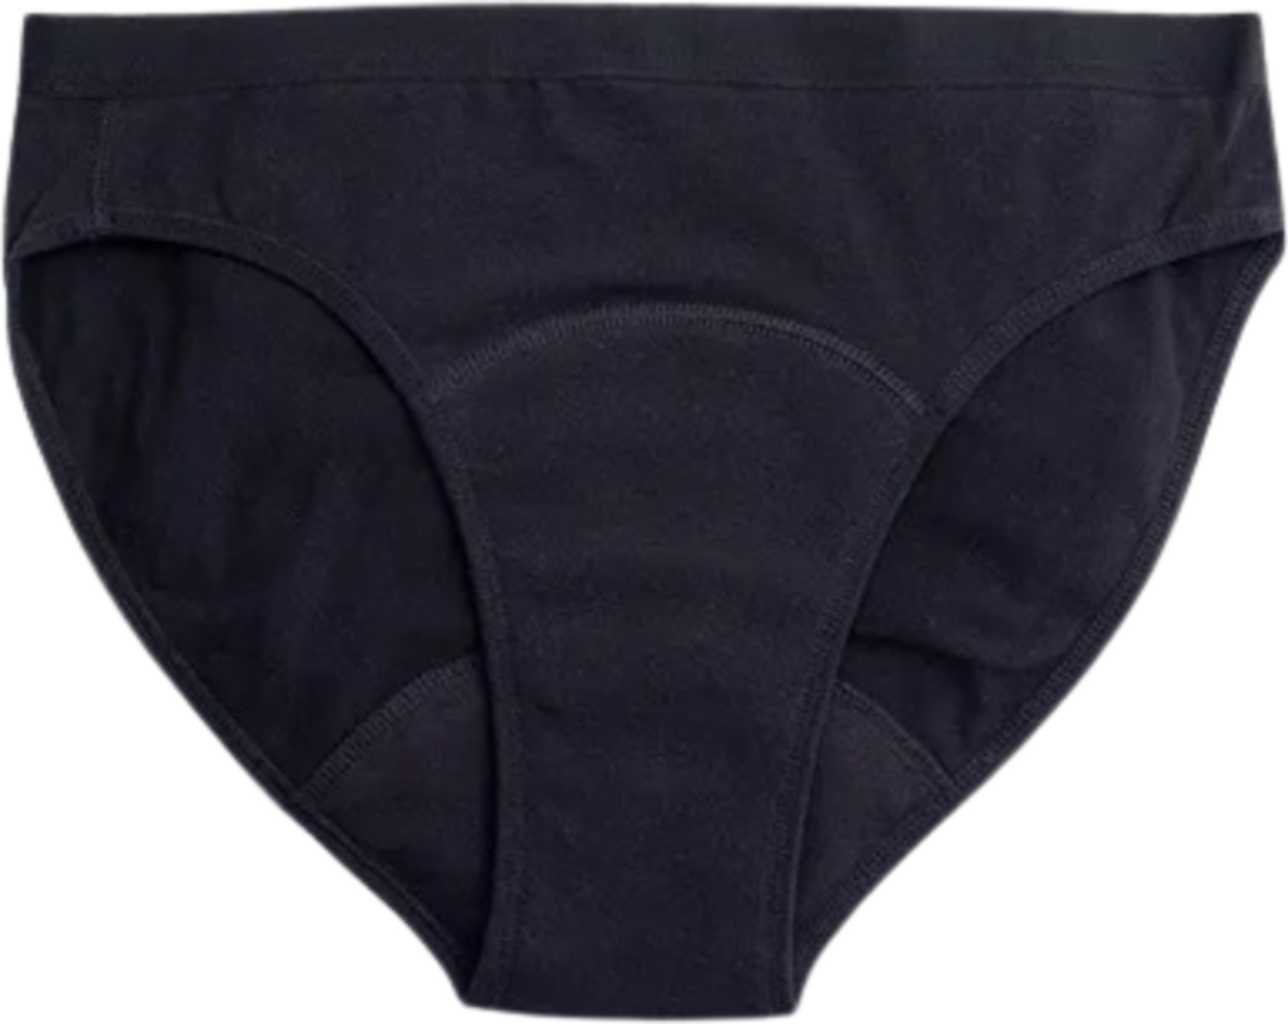 Organic Period Panty (Bikini) (1 pc) at Rs 899.00